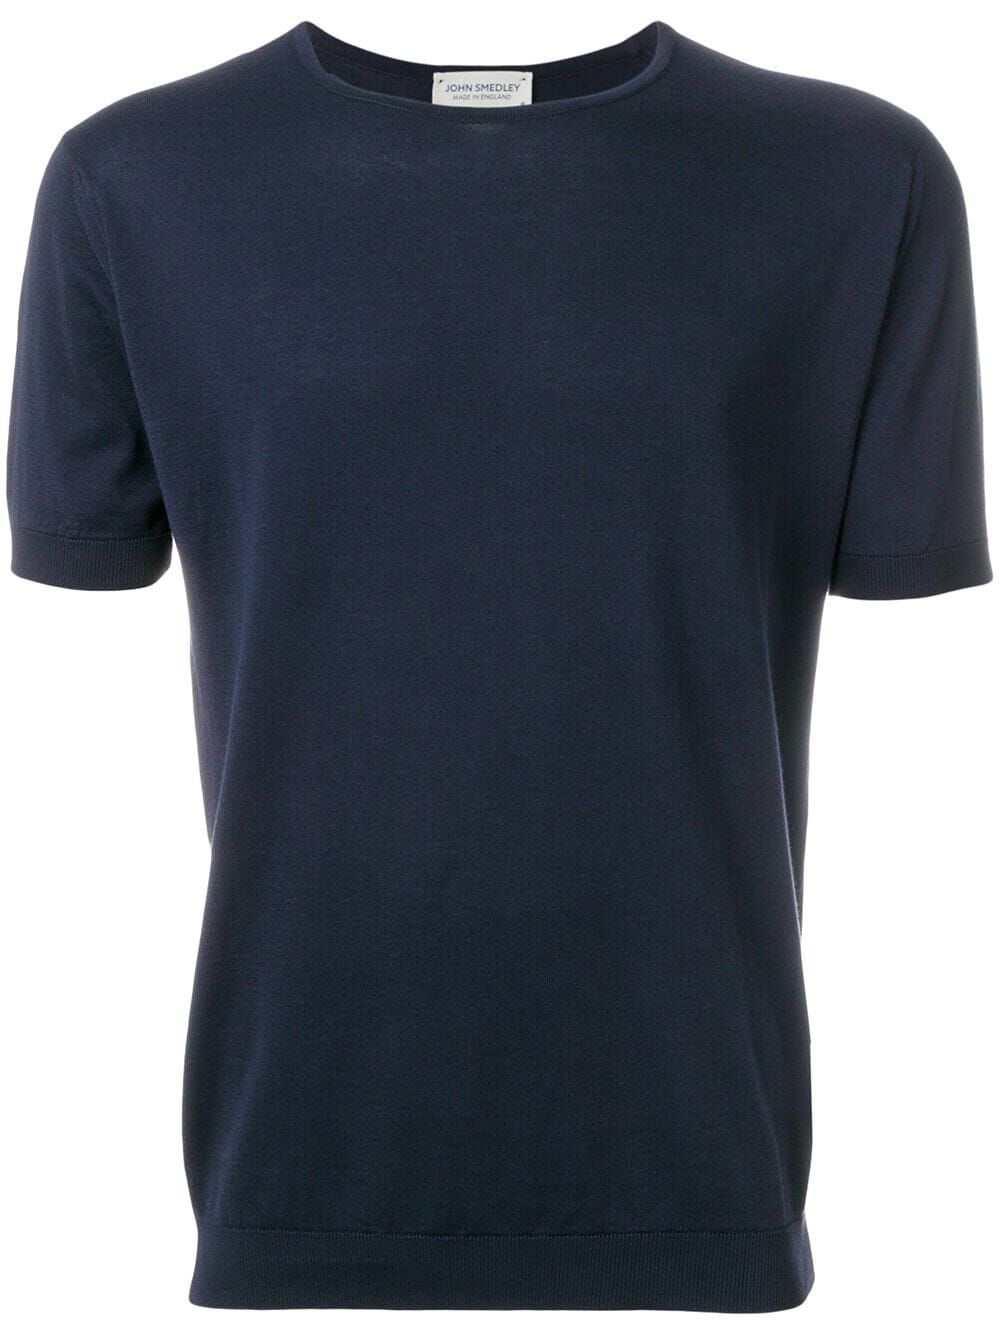 Belden Short Sleeves Crew Neck T-shirt